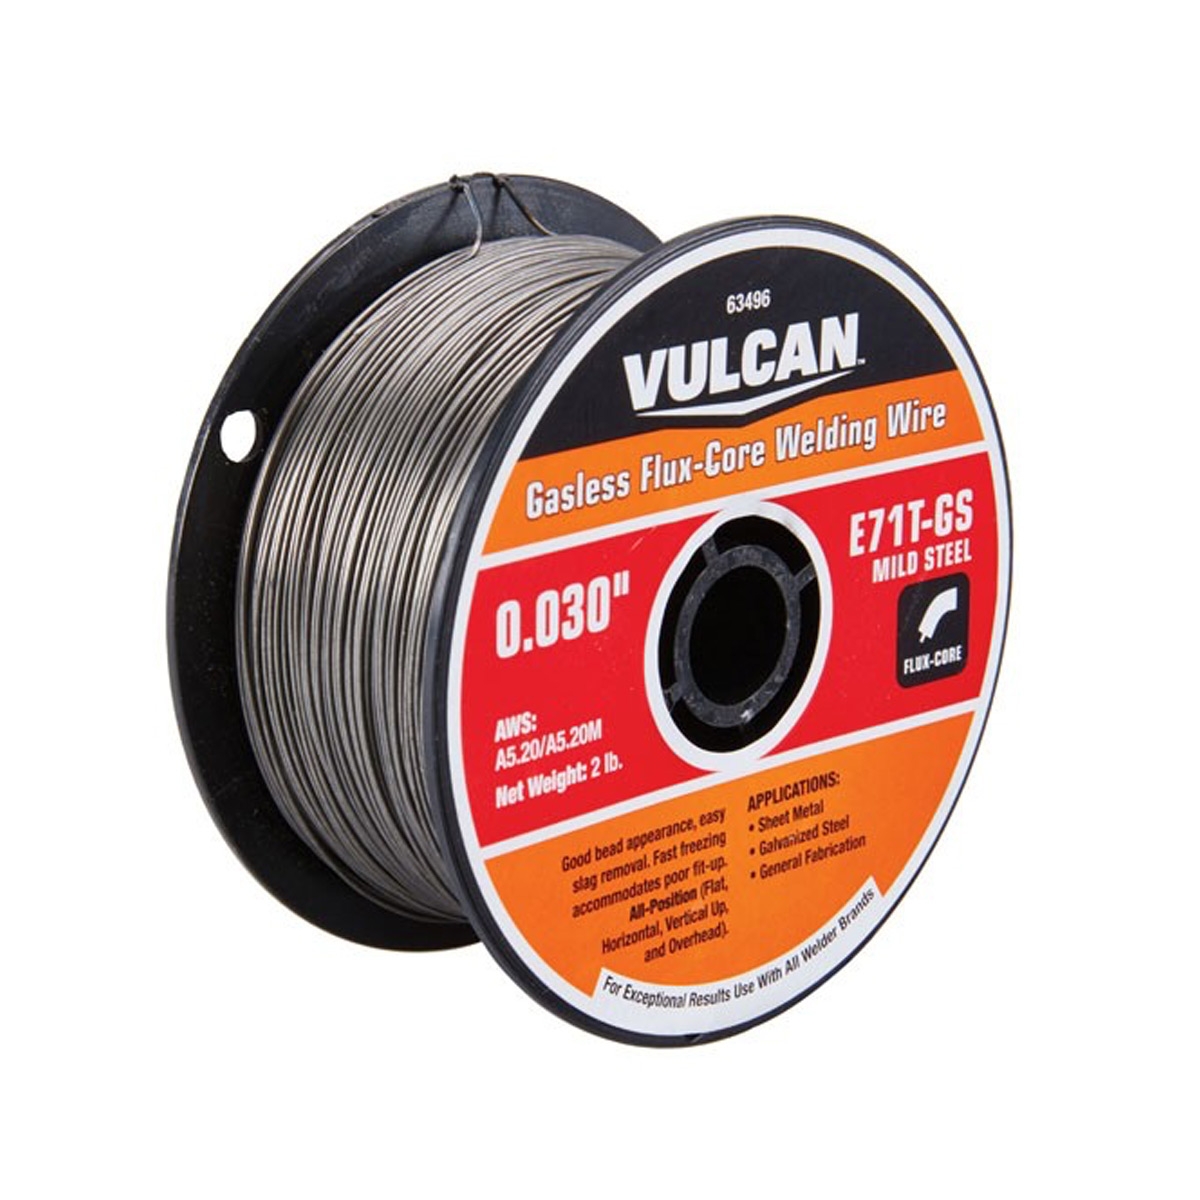 VULCAN 0.030 in. E71T-GS Flux Core Welding Wire 2.00 lb. Roll - Item 63496